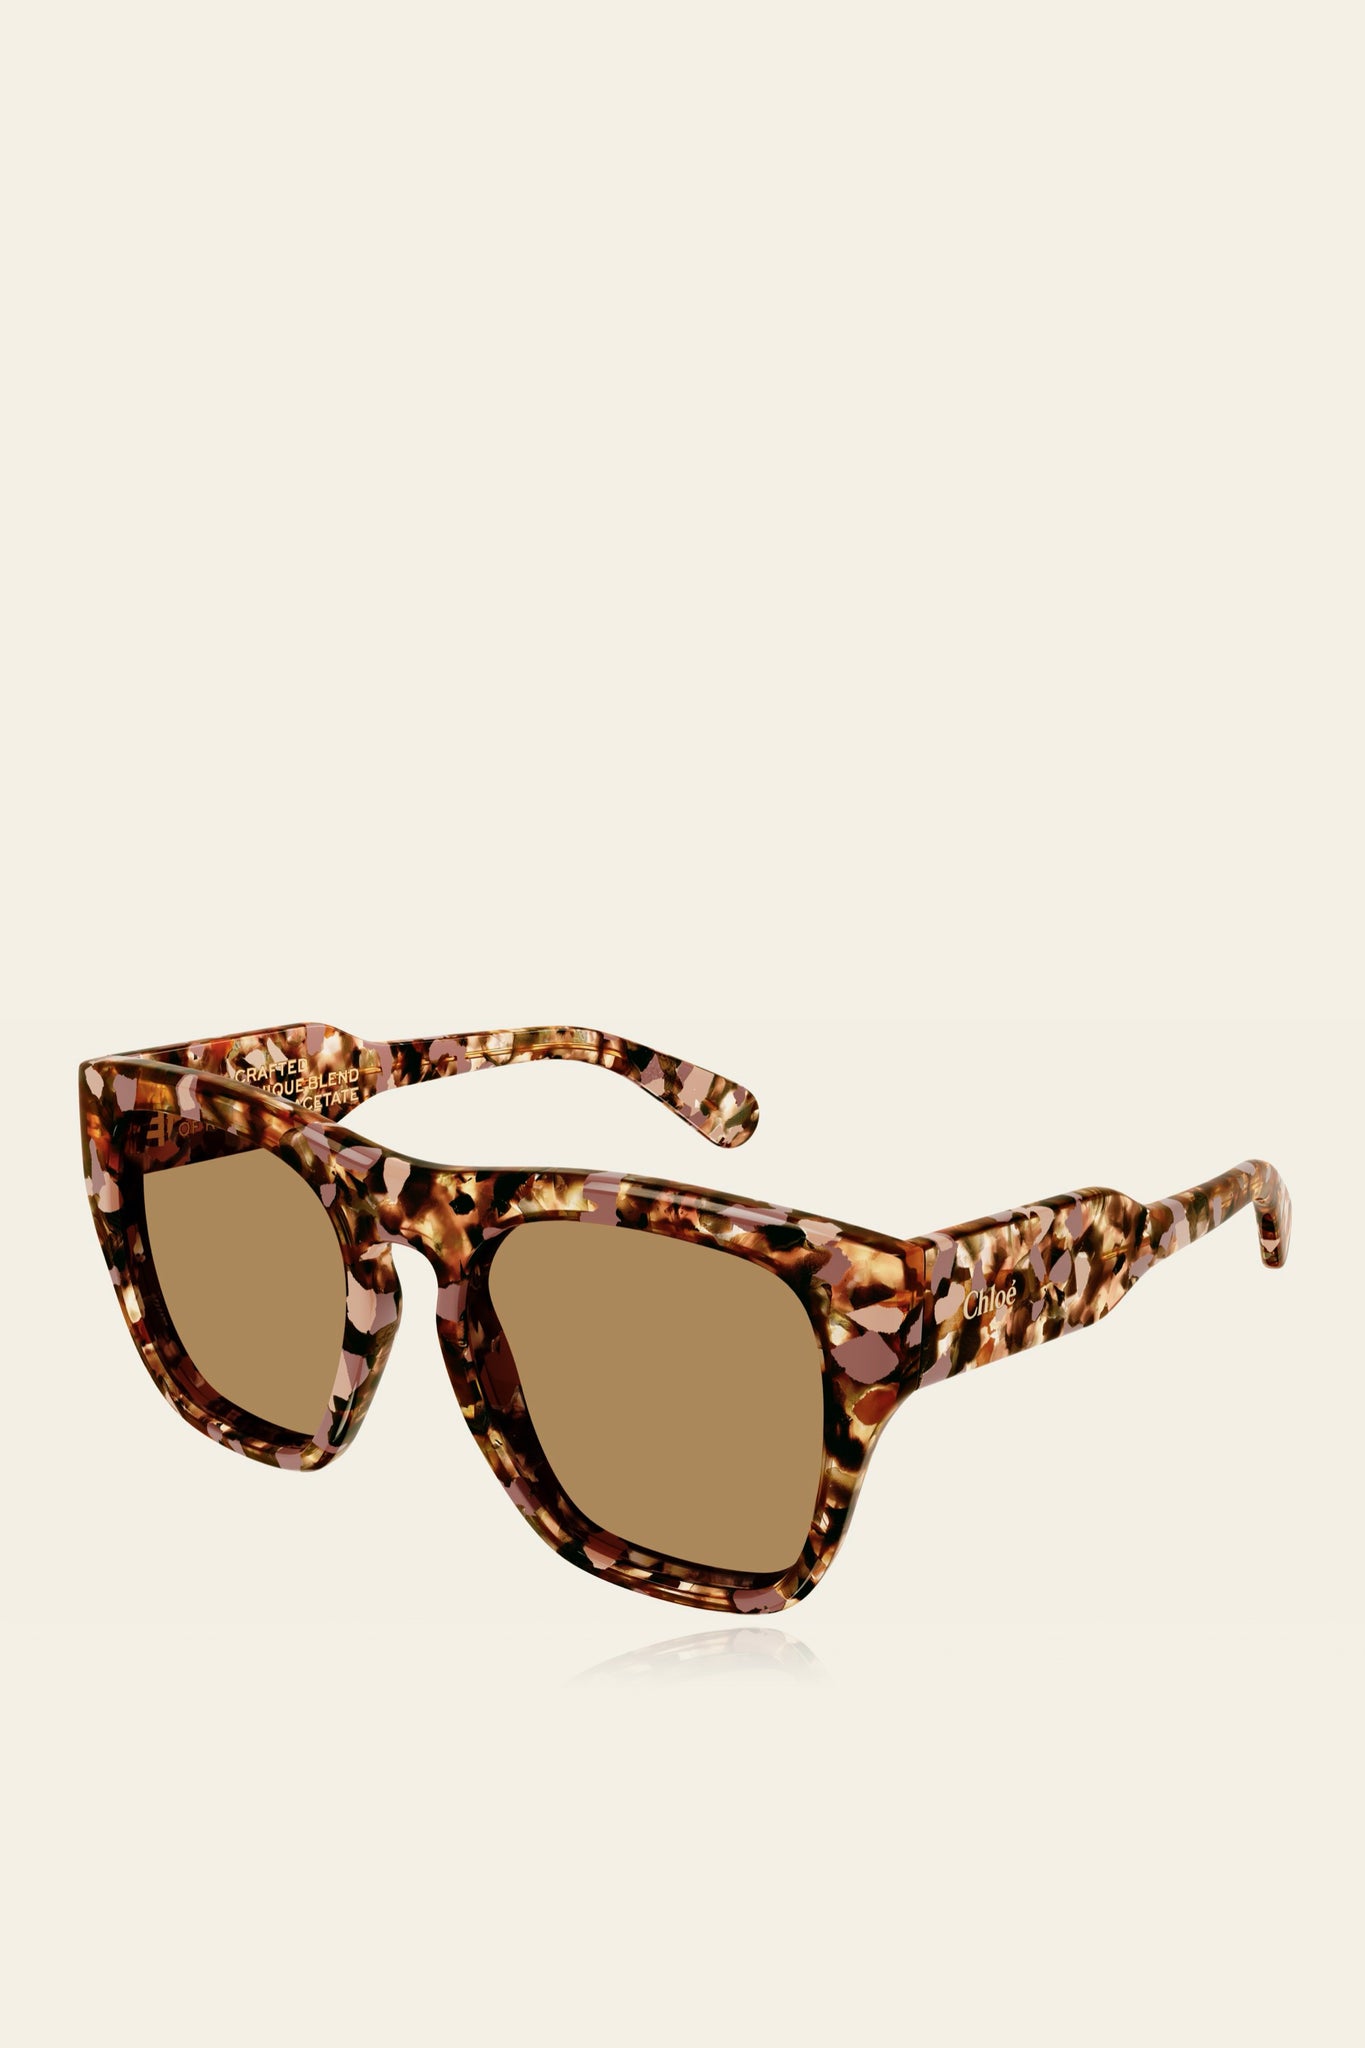 Chloé Sunglasses | Blushy Brown